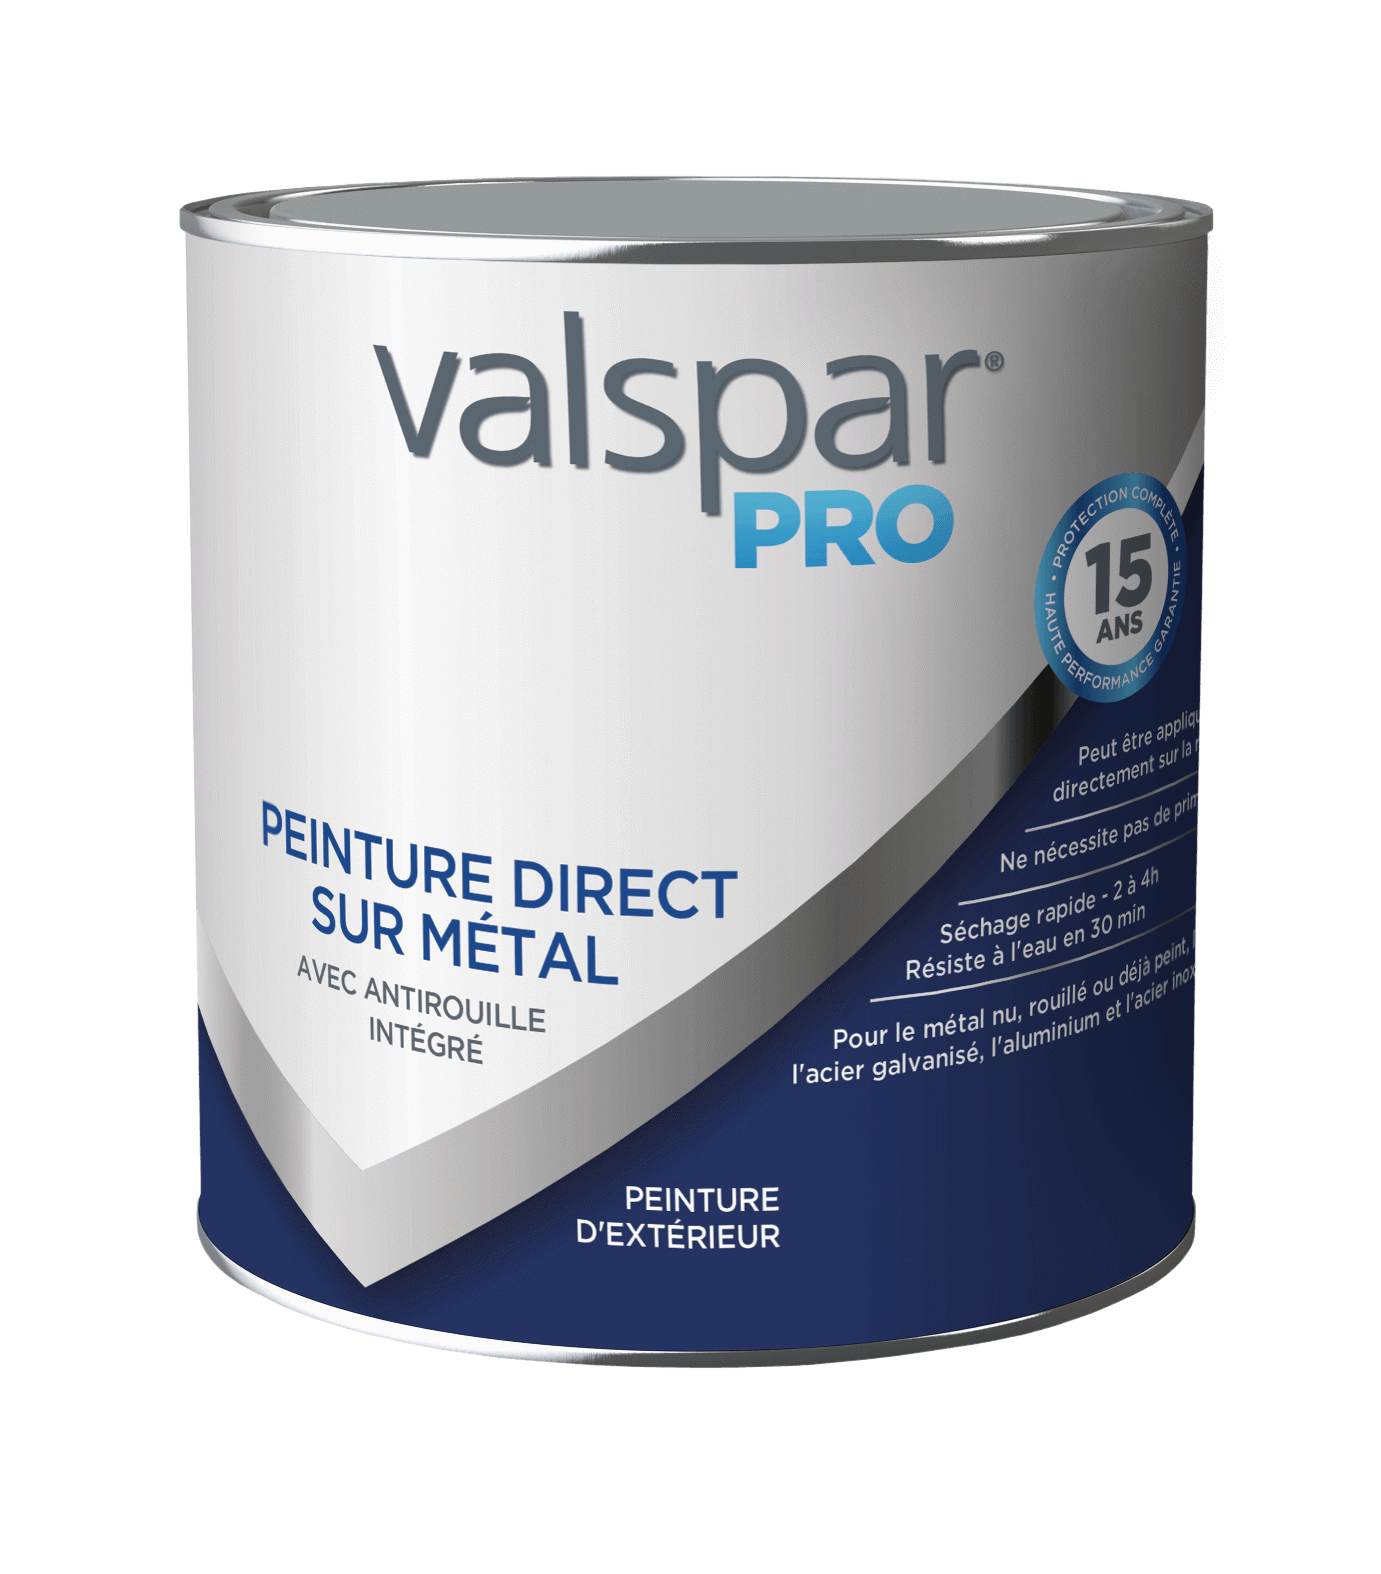 Valspar® Pro Peinture Direct sur Métal